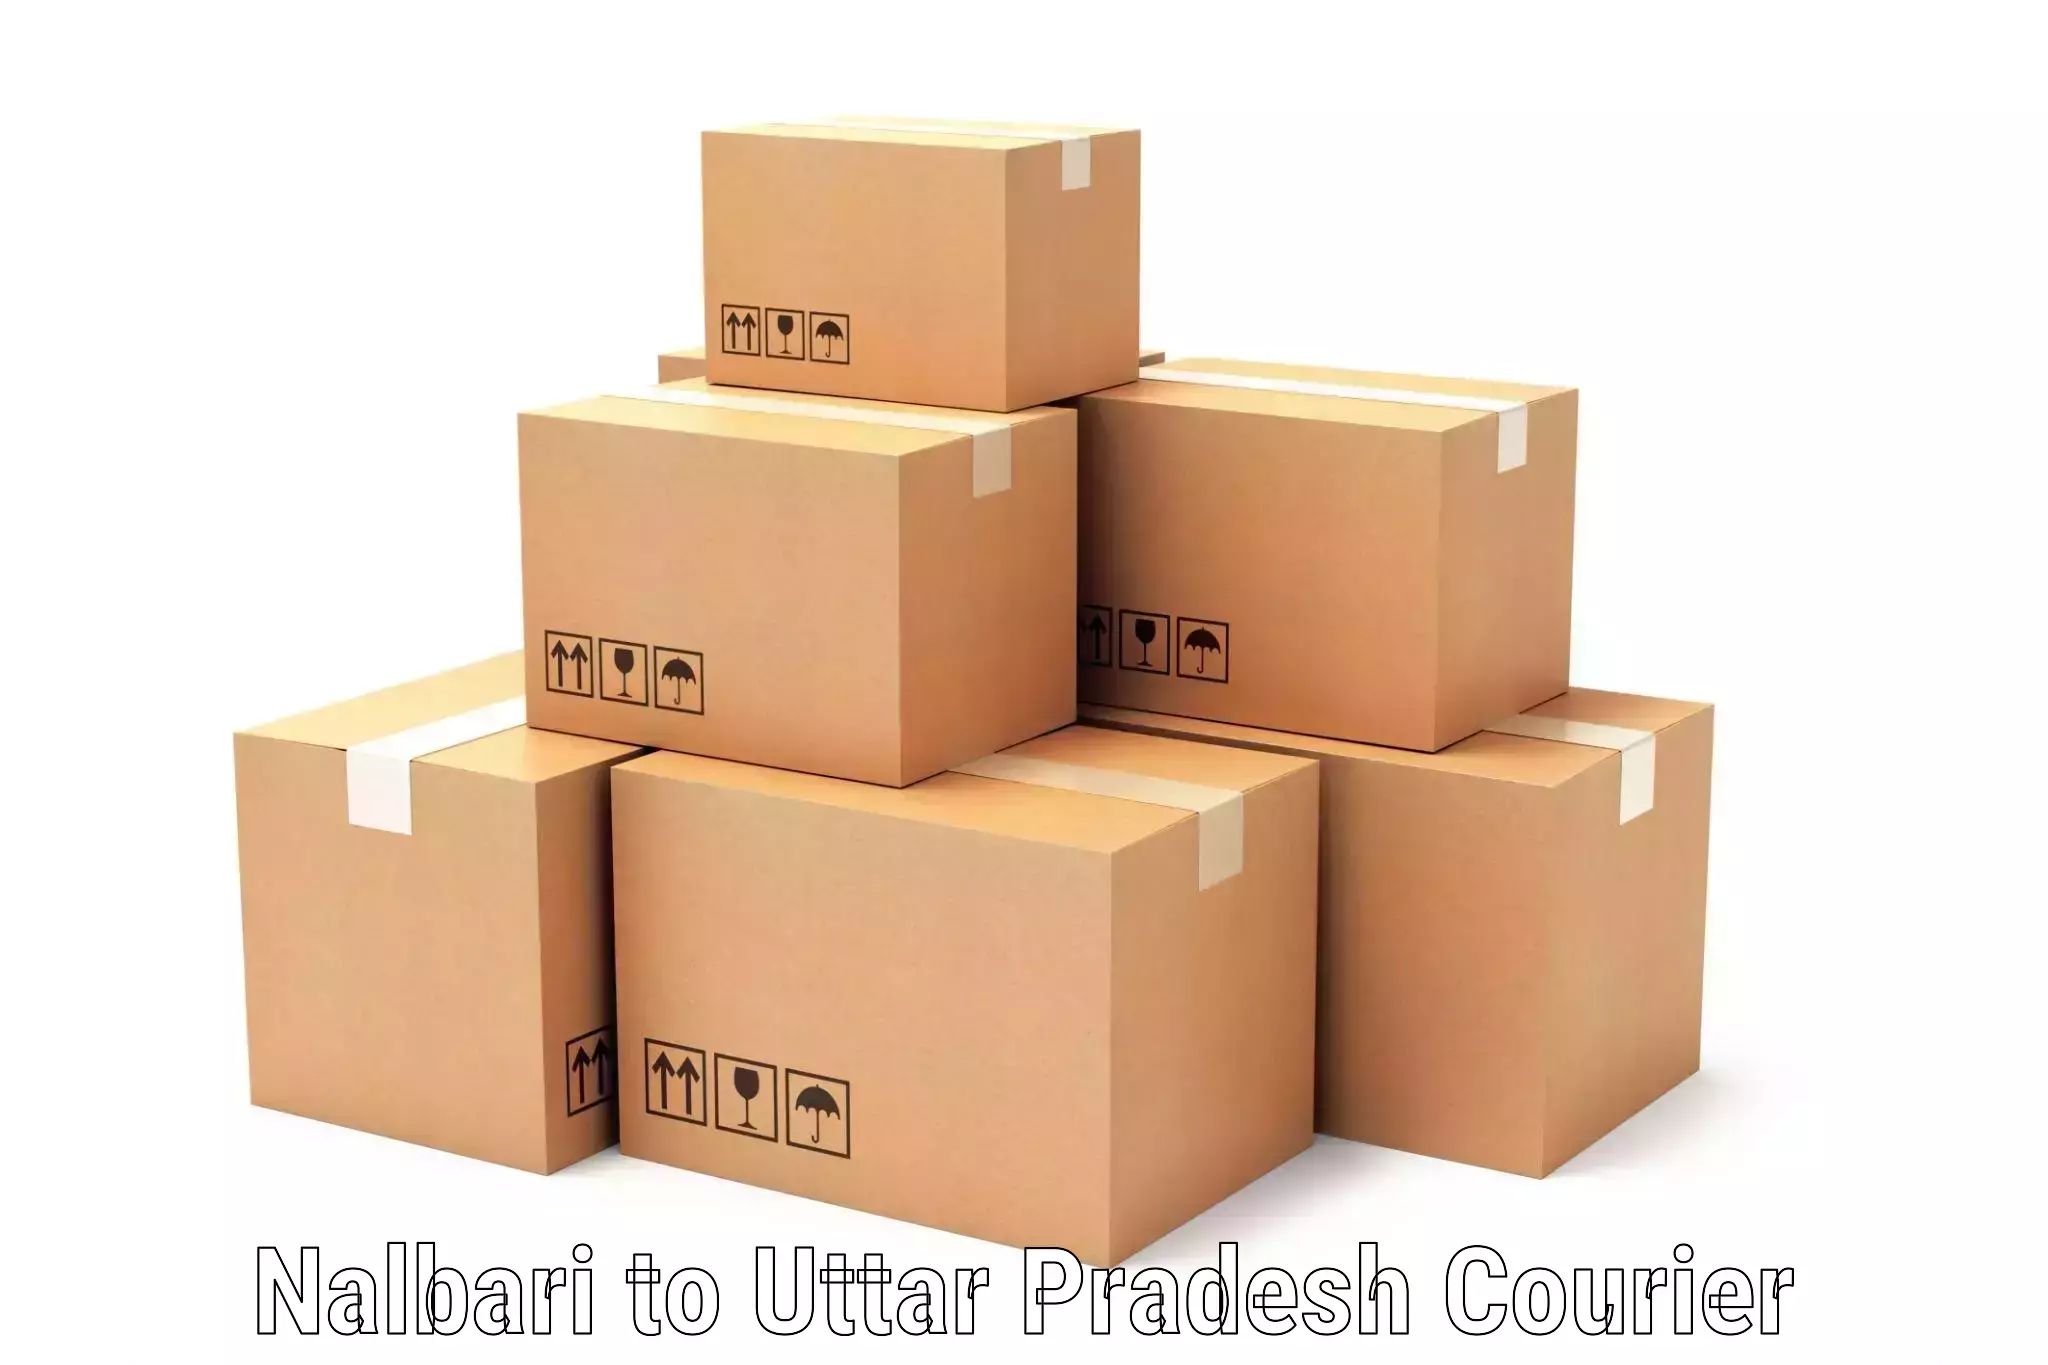 Cash on delivery service Nalbari to Tilhar